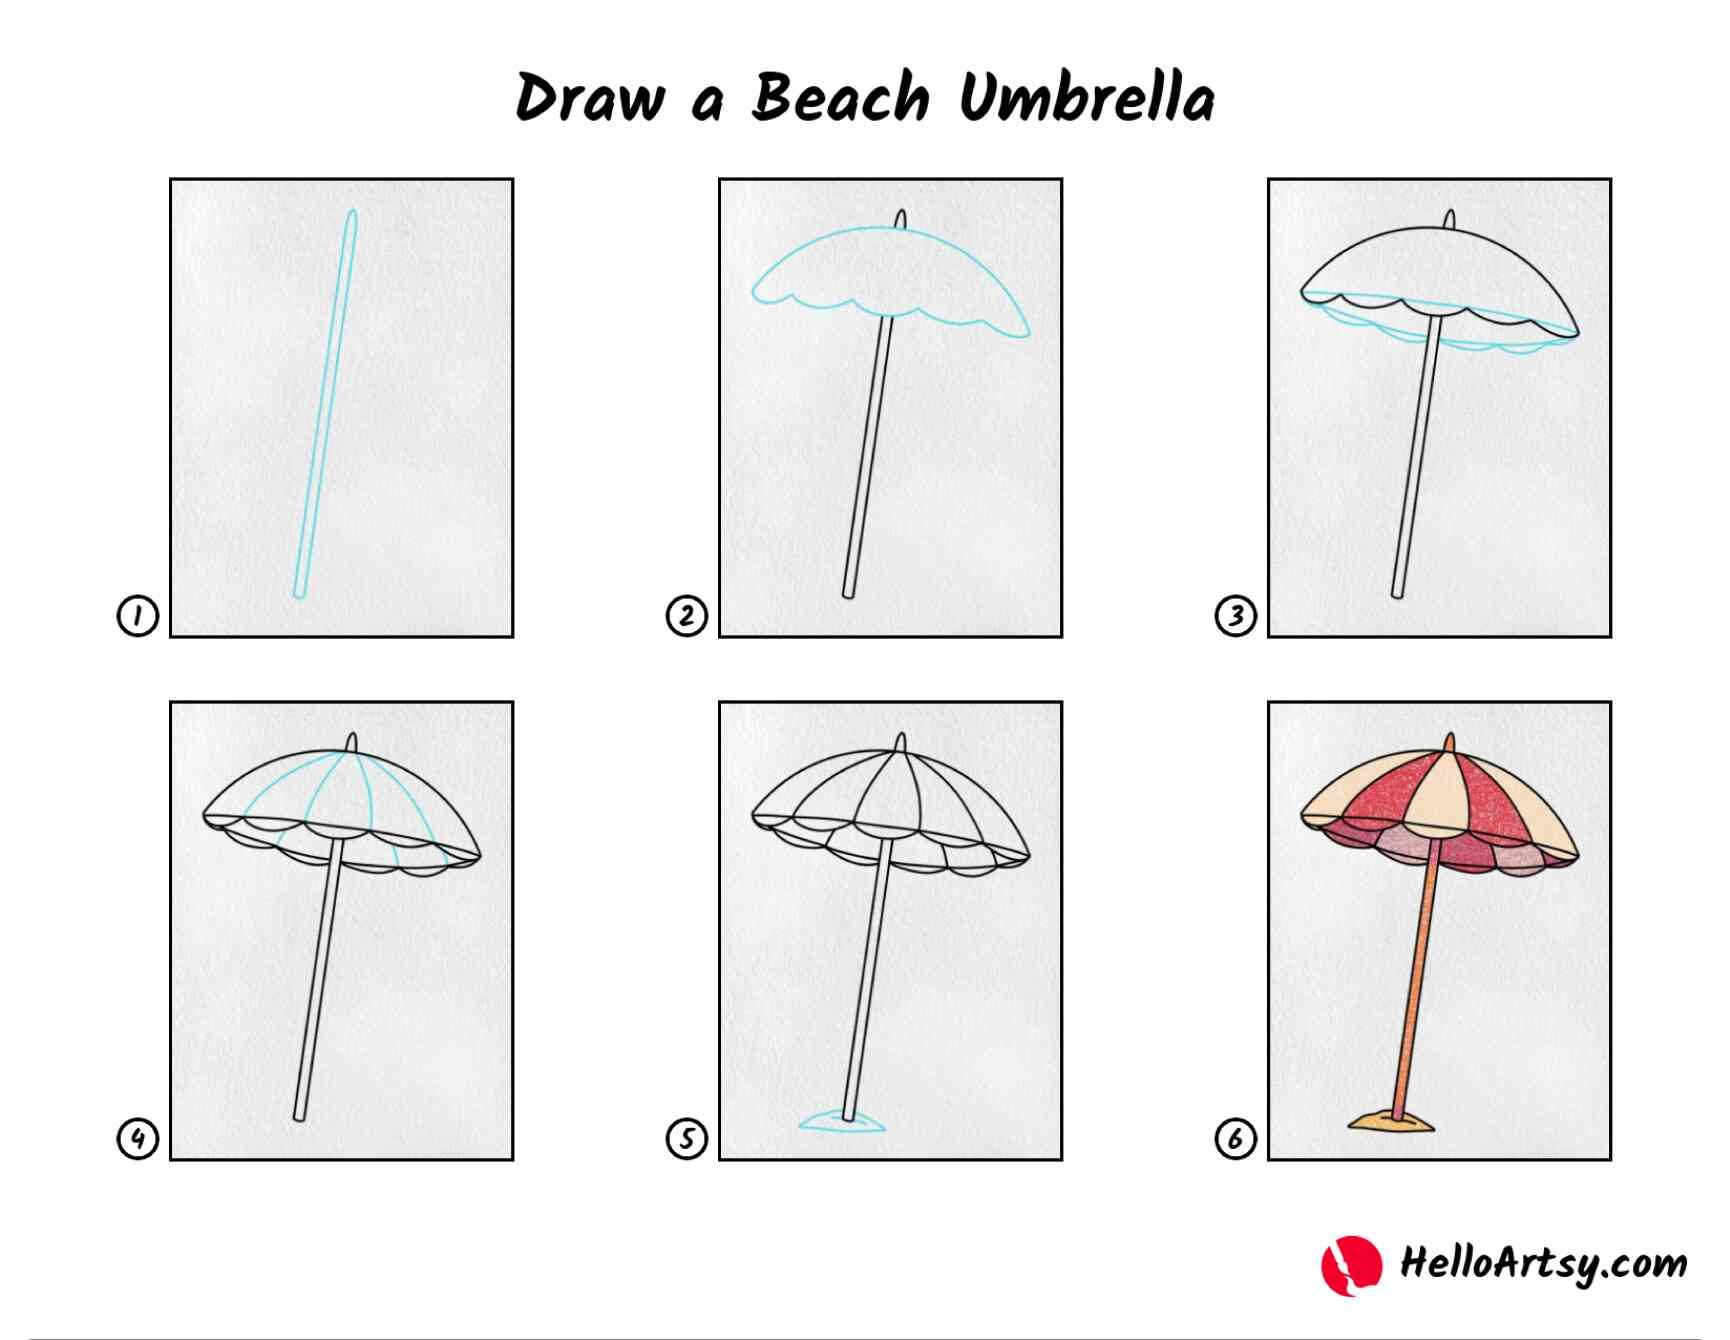 Regenschirm-Idee 8 zeichnen ideen